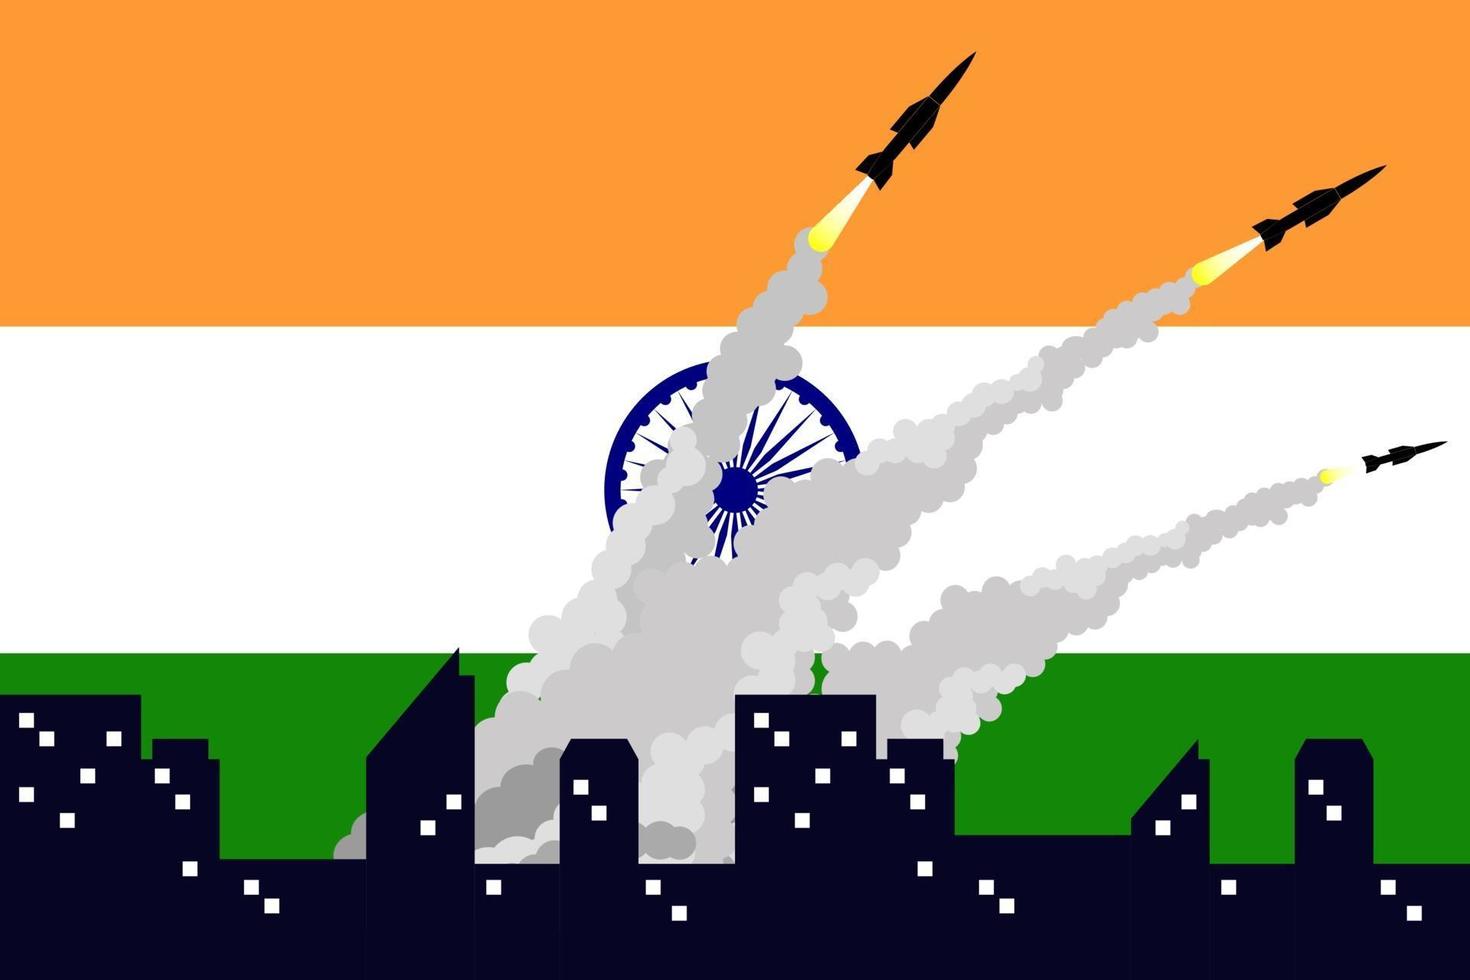 Illustration des Abfeuerns von Raketen auf dem Hintergrund der indischen Flagge. vektor